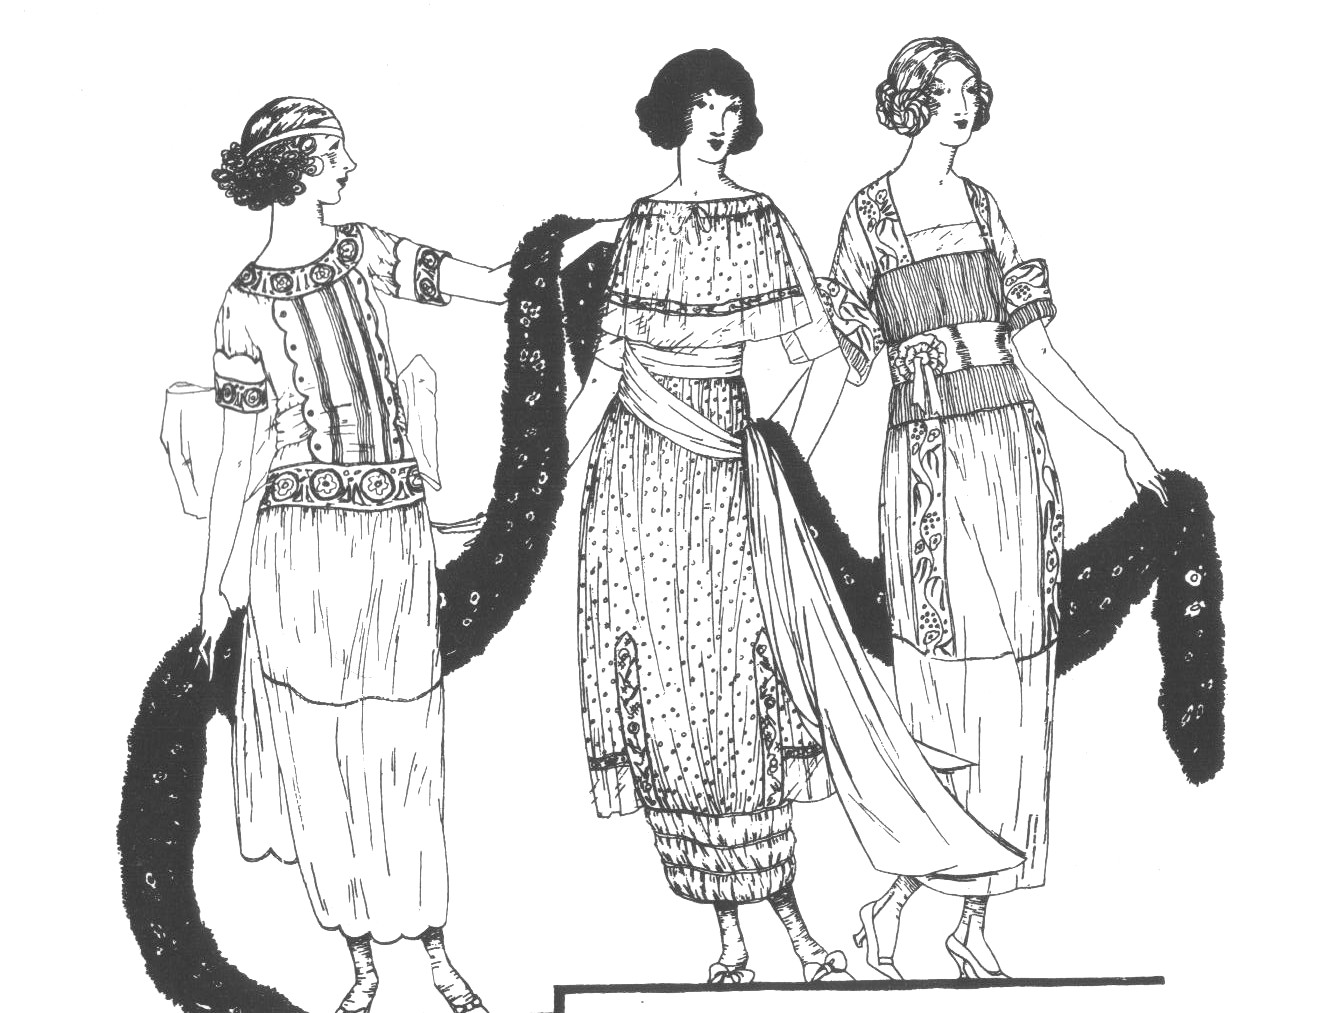 Robe de jour de la mode de l'après-guerre caractérisée par une masculinisation du corps de la femme